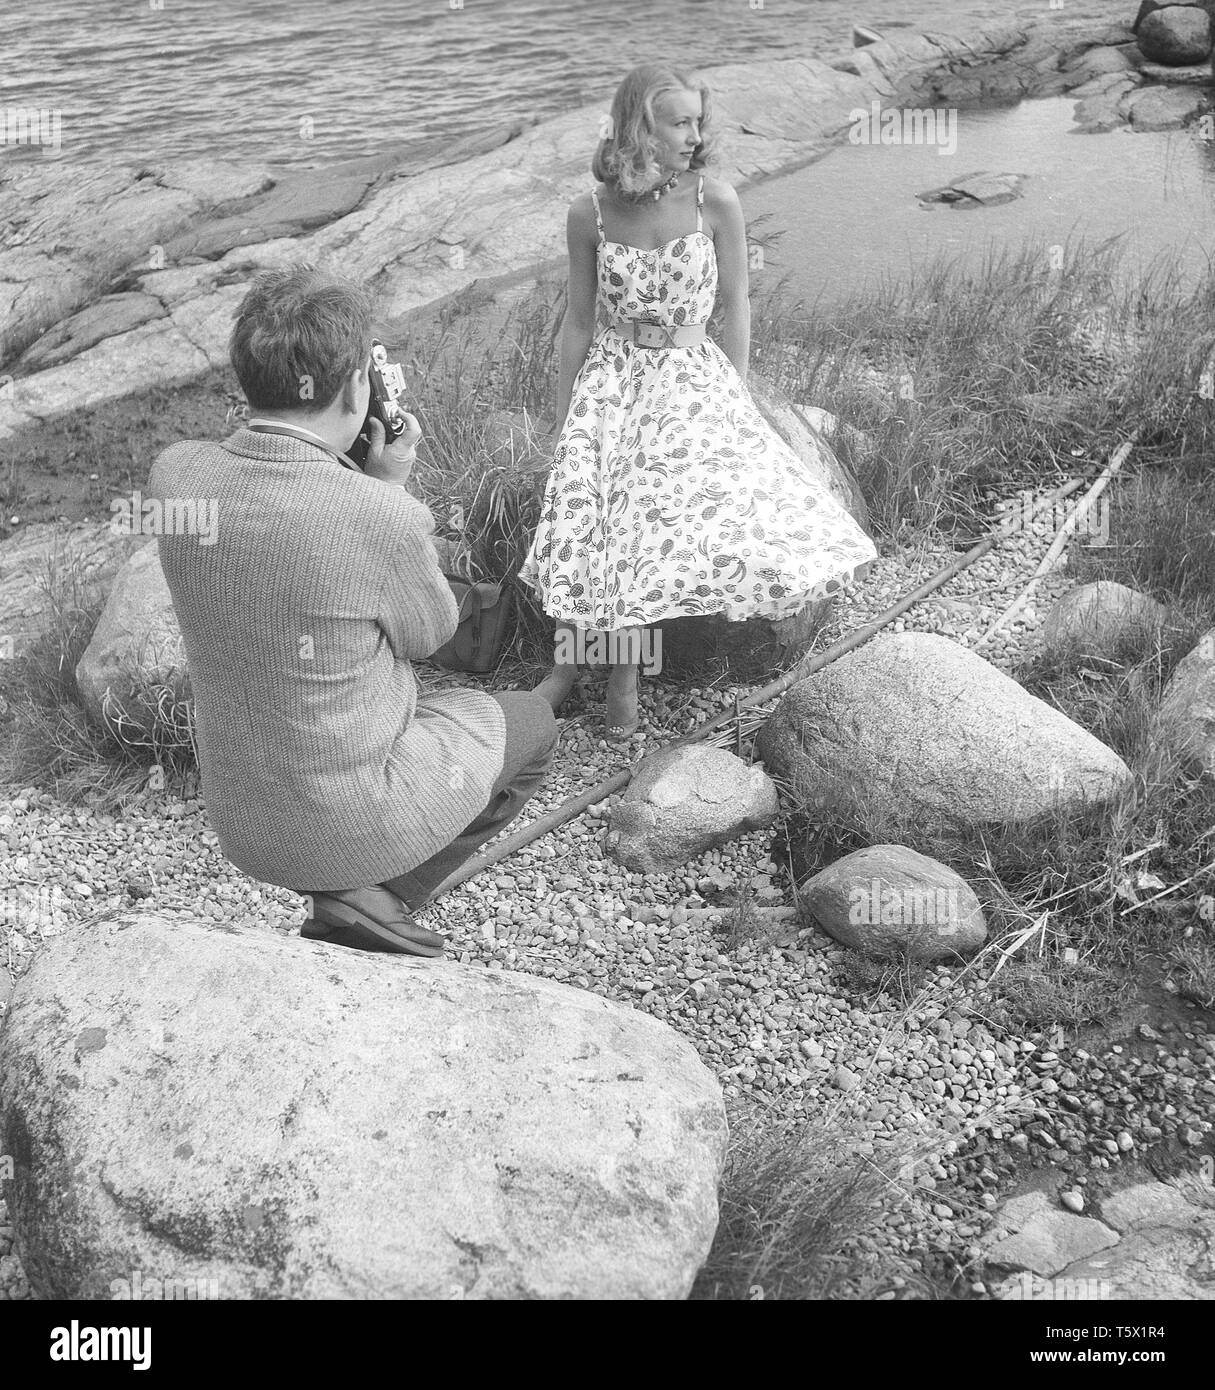 Fotografo amatoriale negli anni '1950 È l'attore americano Burgess Meredith che fotografa la moglie svedese Kaja Sundsten. Svezia 1954. Foto Kristoffersson Rif BF78-1 Foto Stock